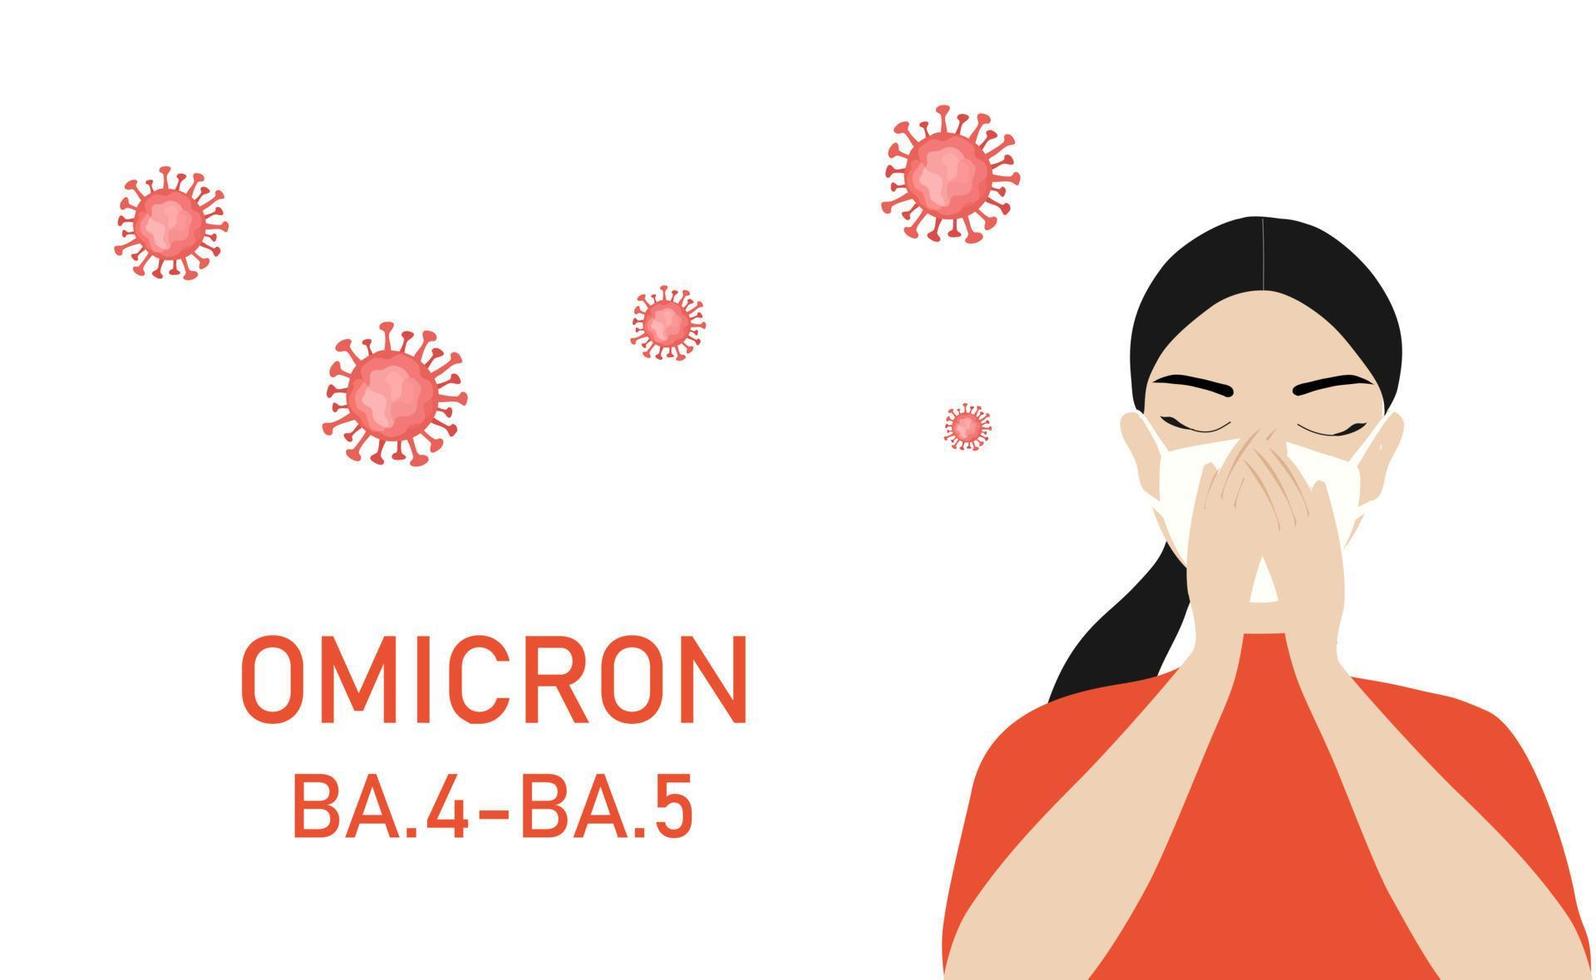 ommicron variant ba.4-ba.5 covid-19. nieuwe stam van het coronavirus. vrouw met gezichtsmasker hoesten vectorillustratie vector